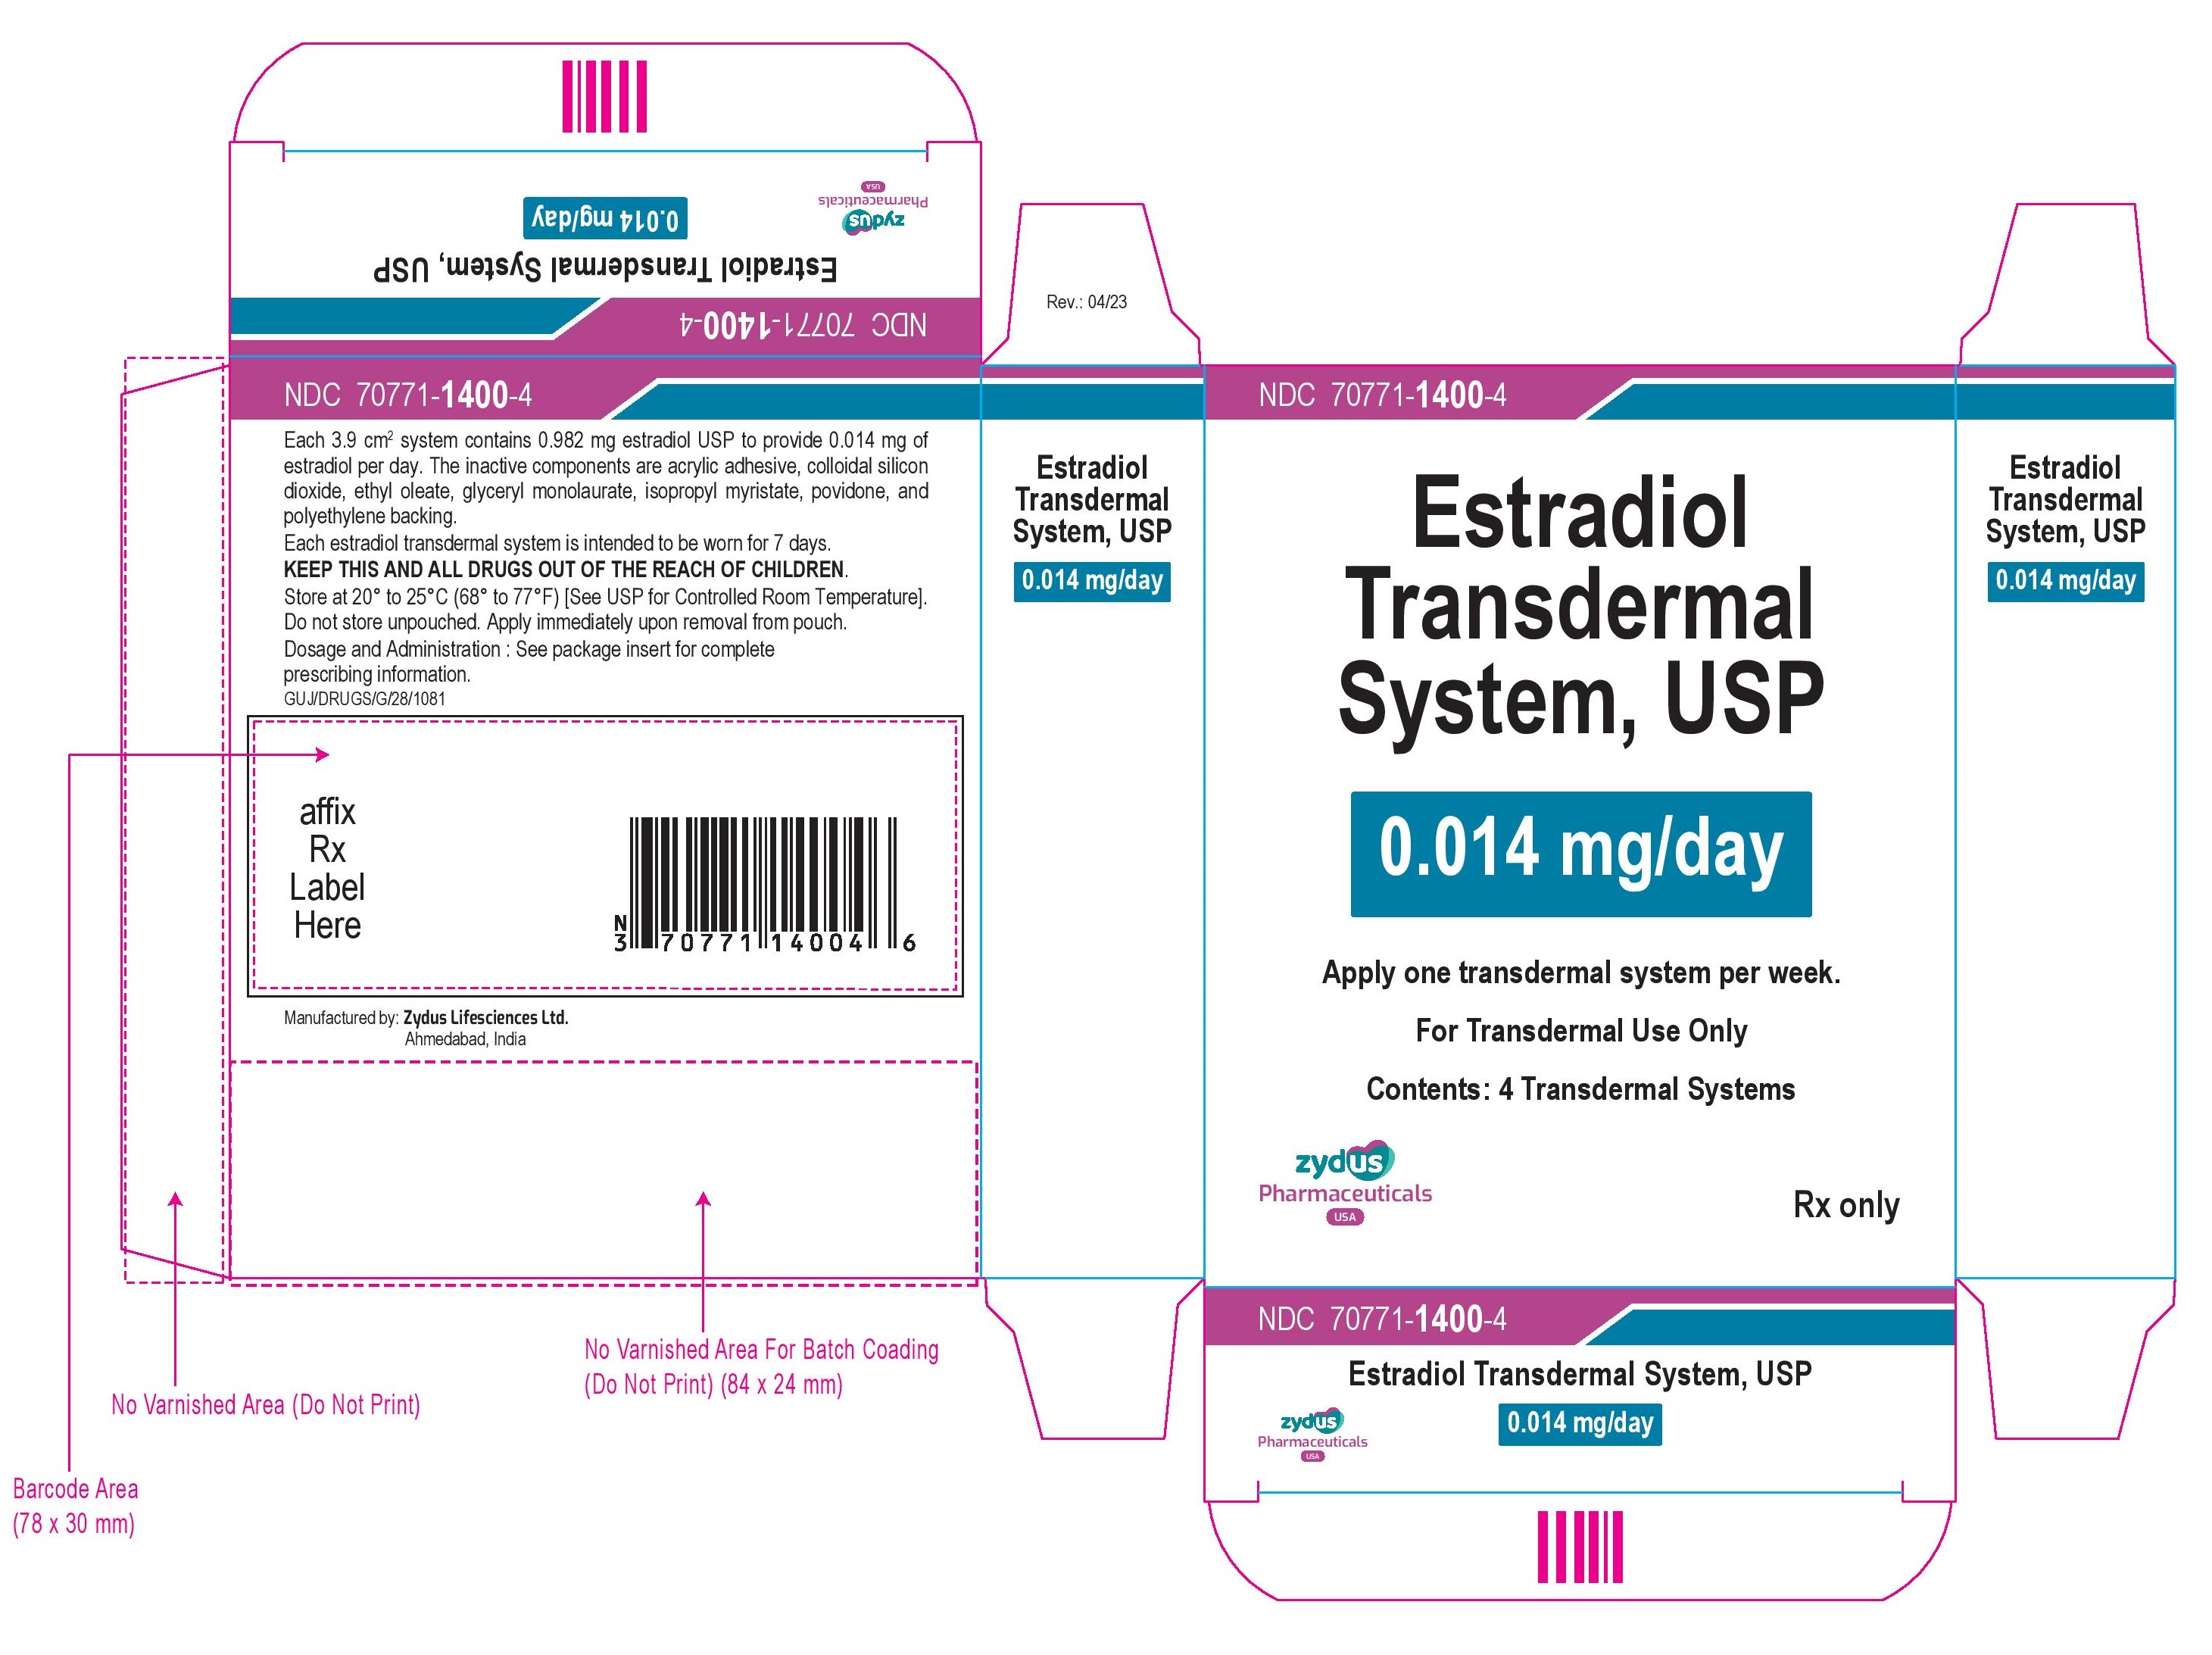 Estradiol Transdermal System USP 0.014 mg